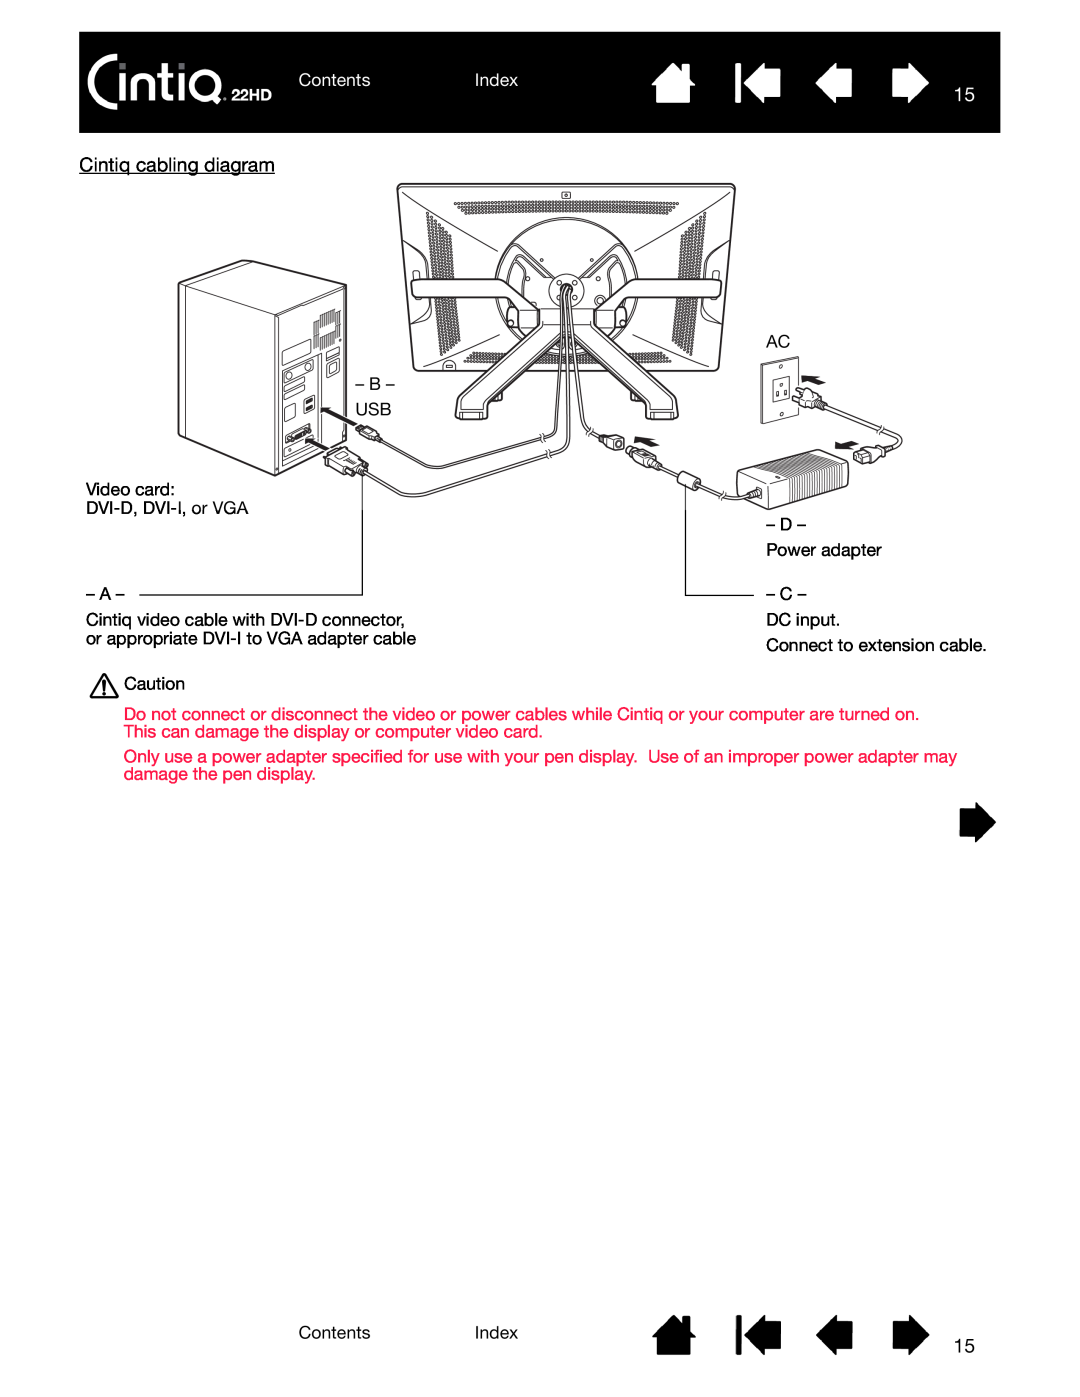 Wacom DTK-2200 user manual Cintiq cabling diagram, ContentsIndex 